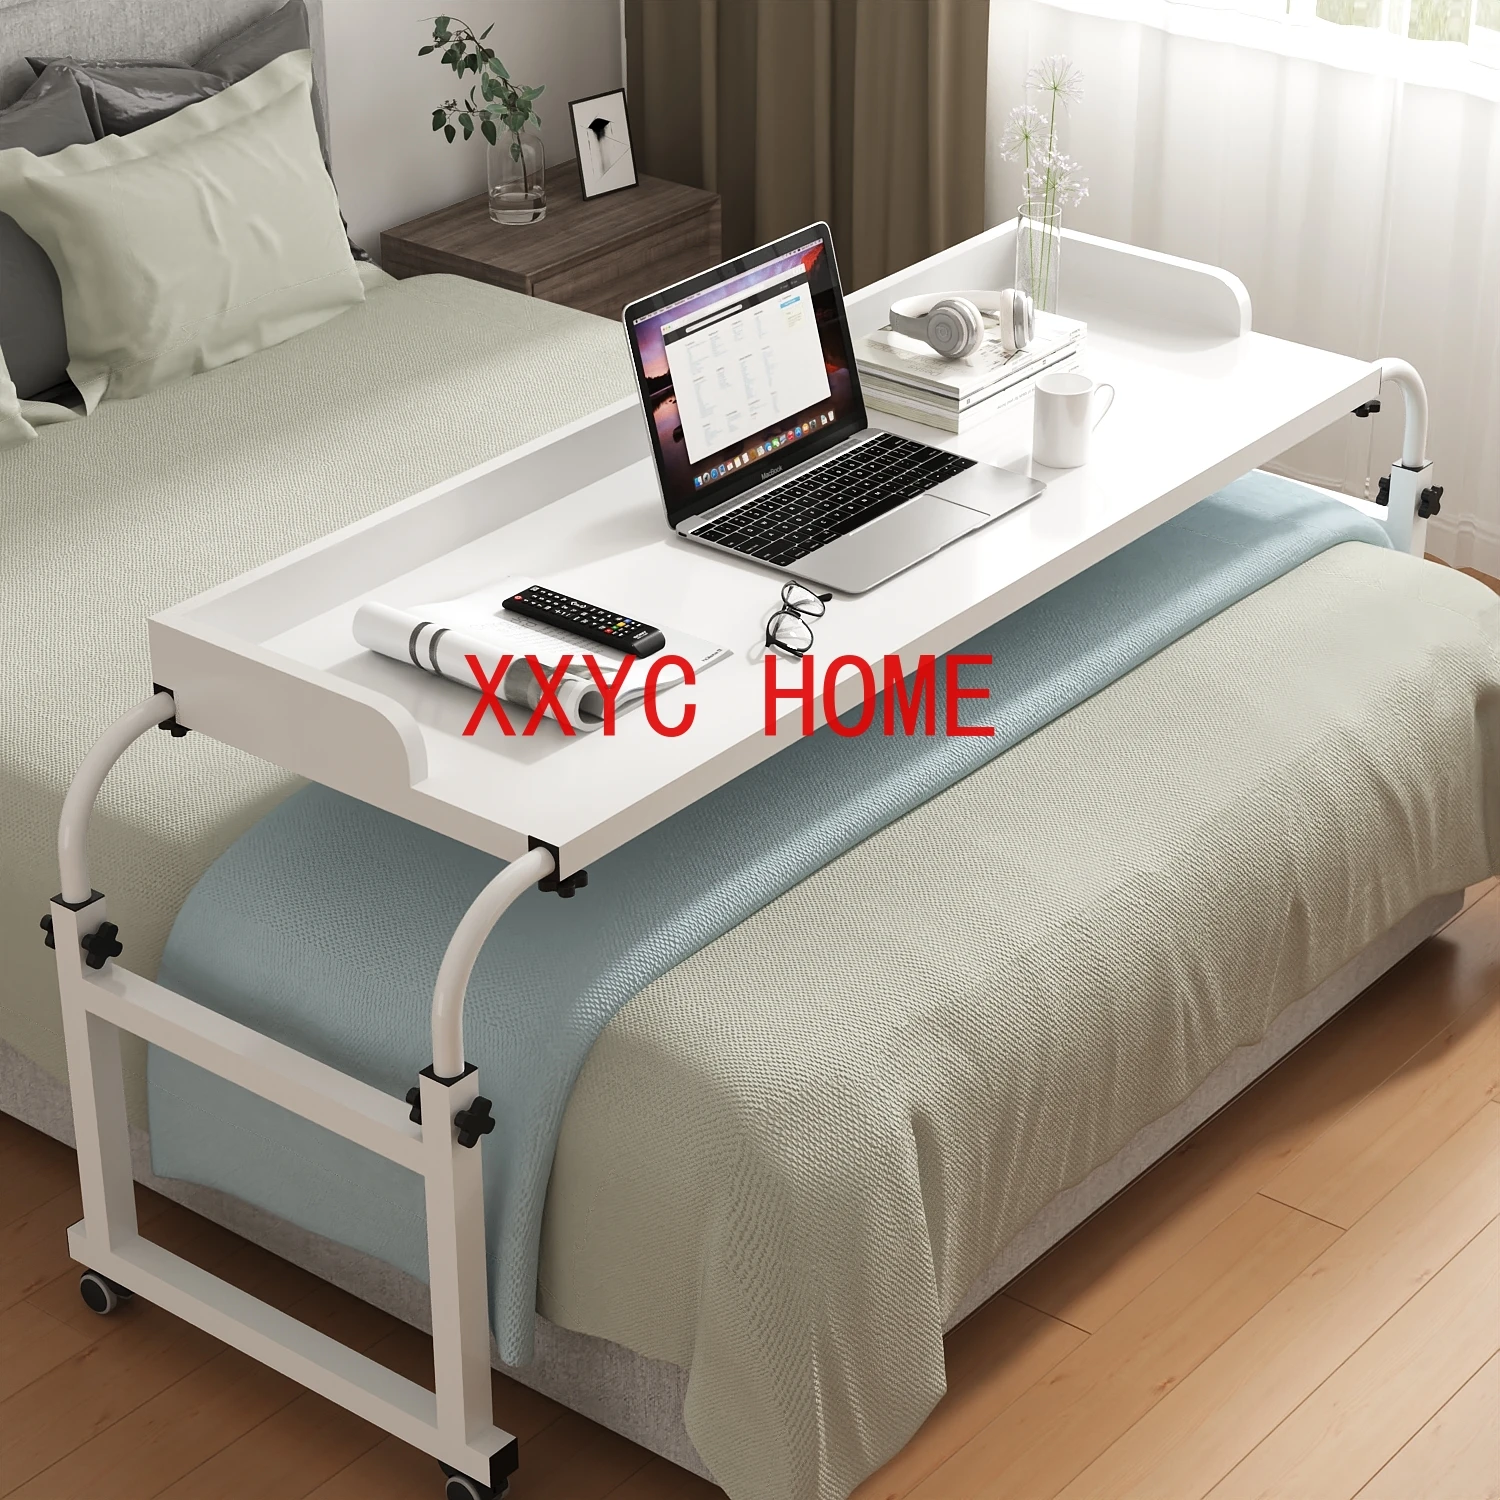 

Стол для кровати, подвижный стол, компьютерный стол, домашний стол для кровати, ленивый подъемный стол